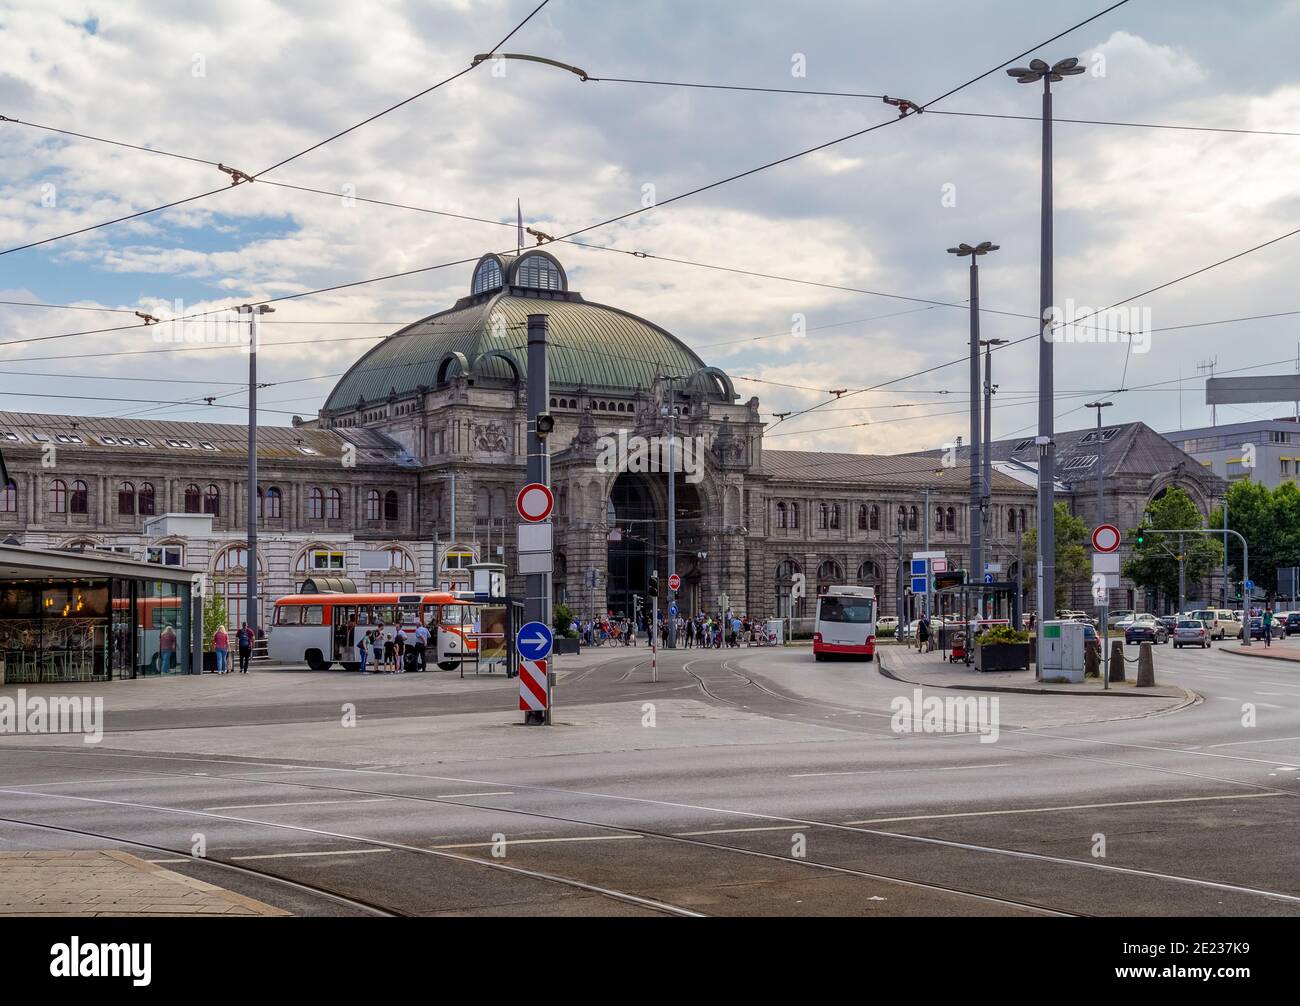 At The Station Of Nuremberg Stockfotos und  bilder Kaufen   Alamy